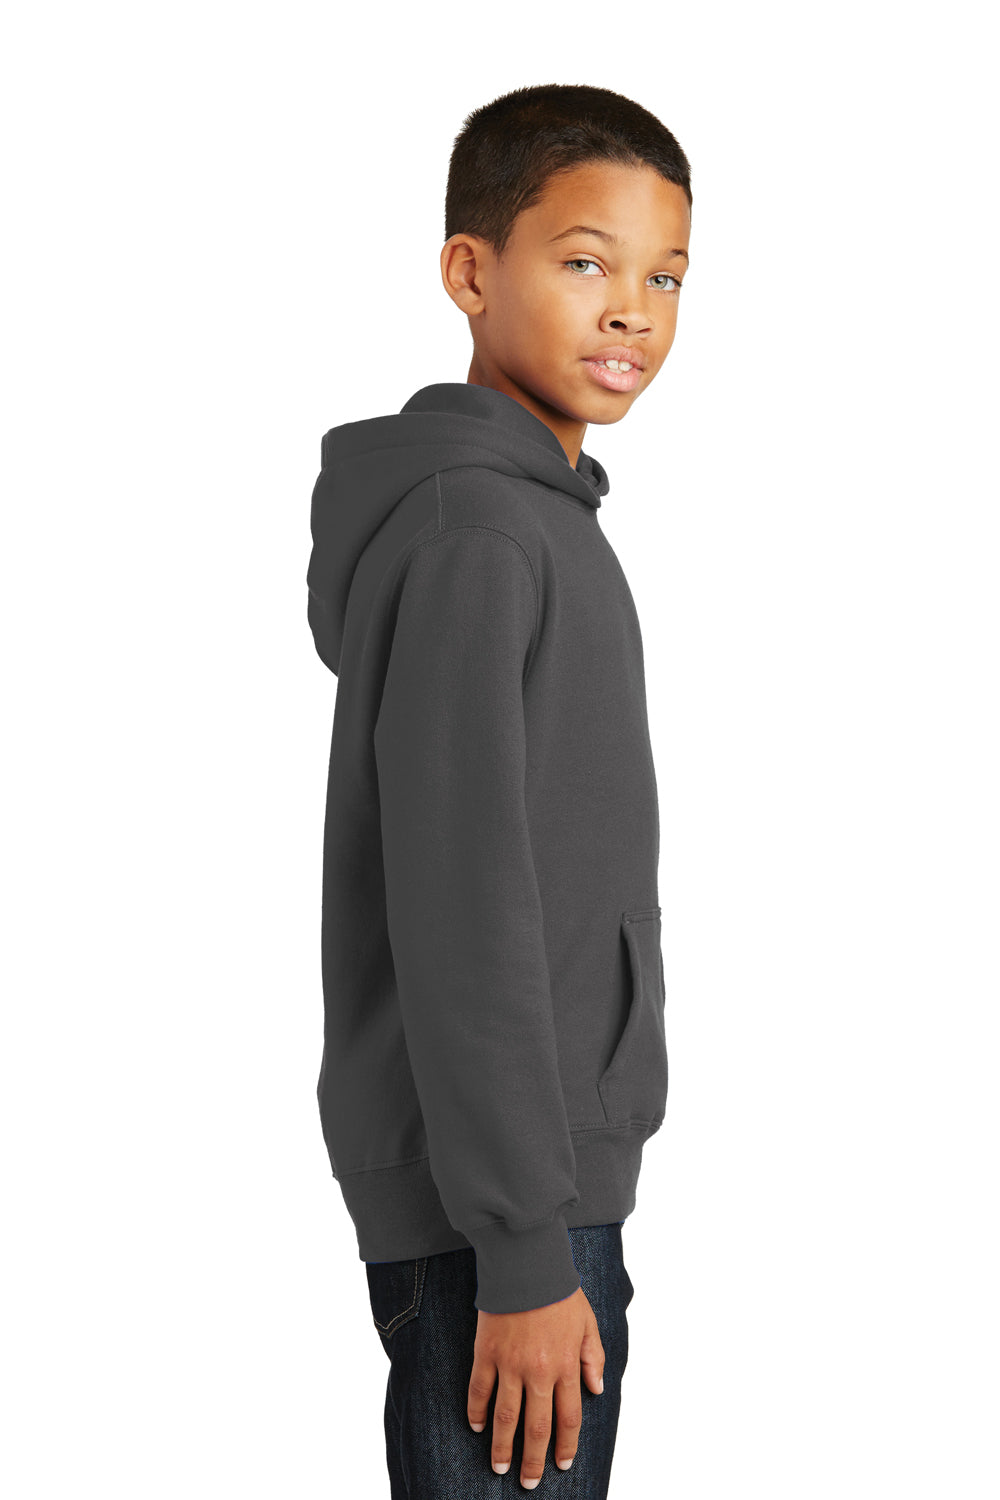 Port & Company PC850YH Youth Fan Favorite Fleece Hooded Sweatshirt Hoodie Charcoal Grey Side